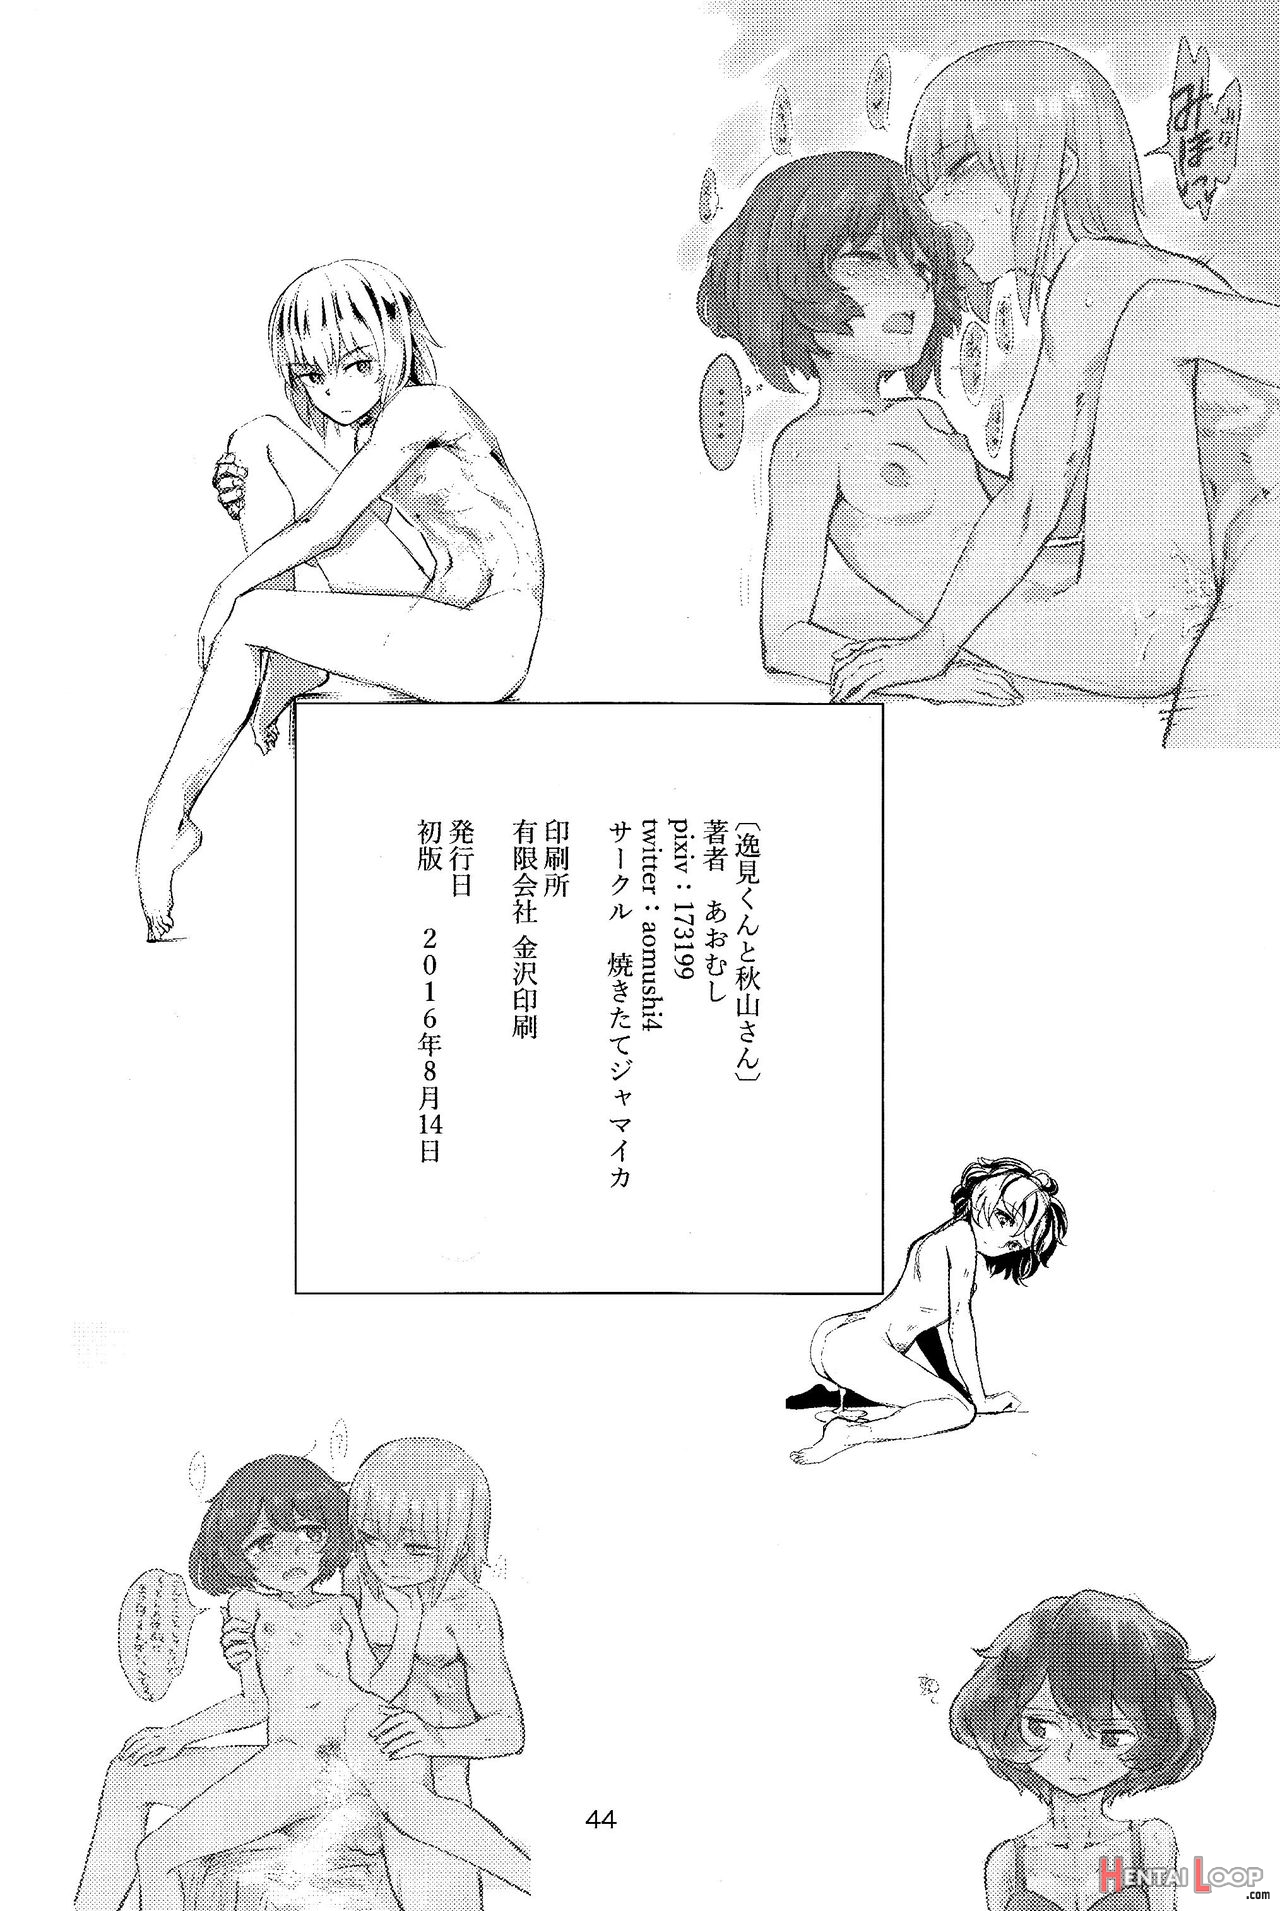 Itsumi-kun To Akiyama-san L Itsumi-kun And Akiyama-sa page 43